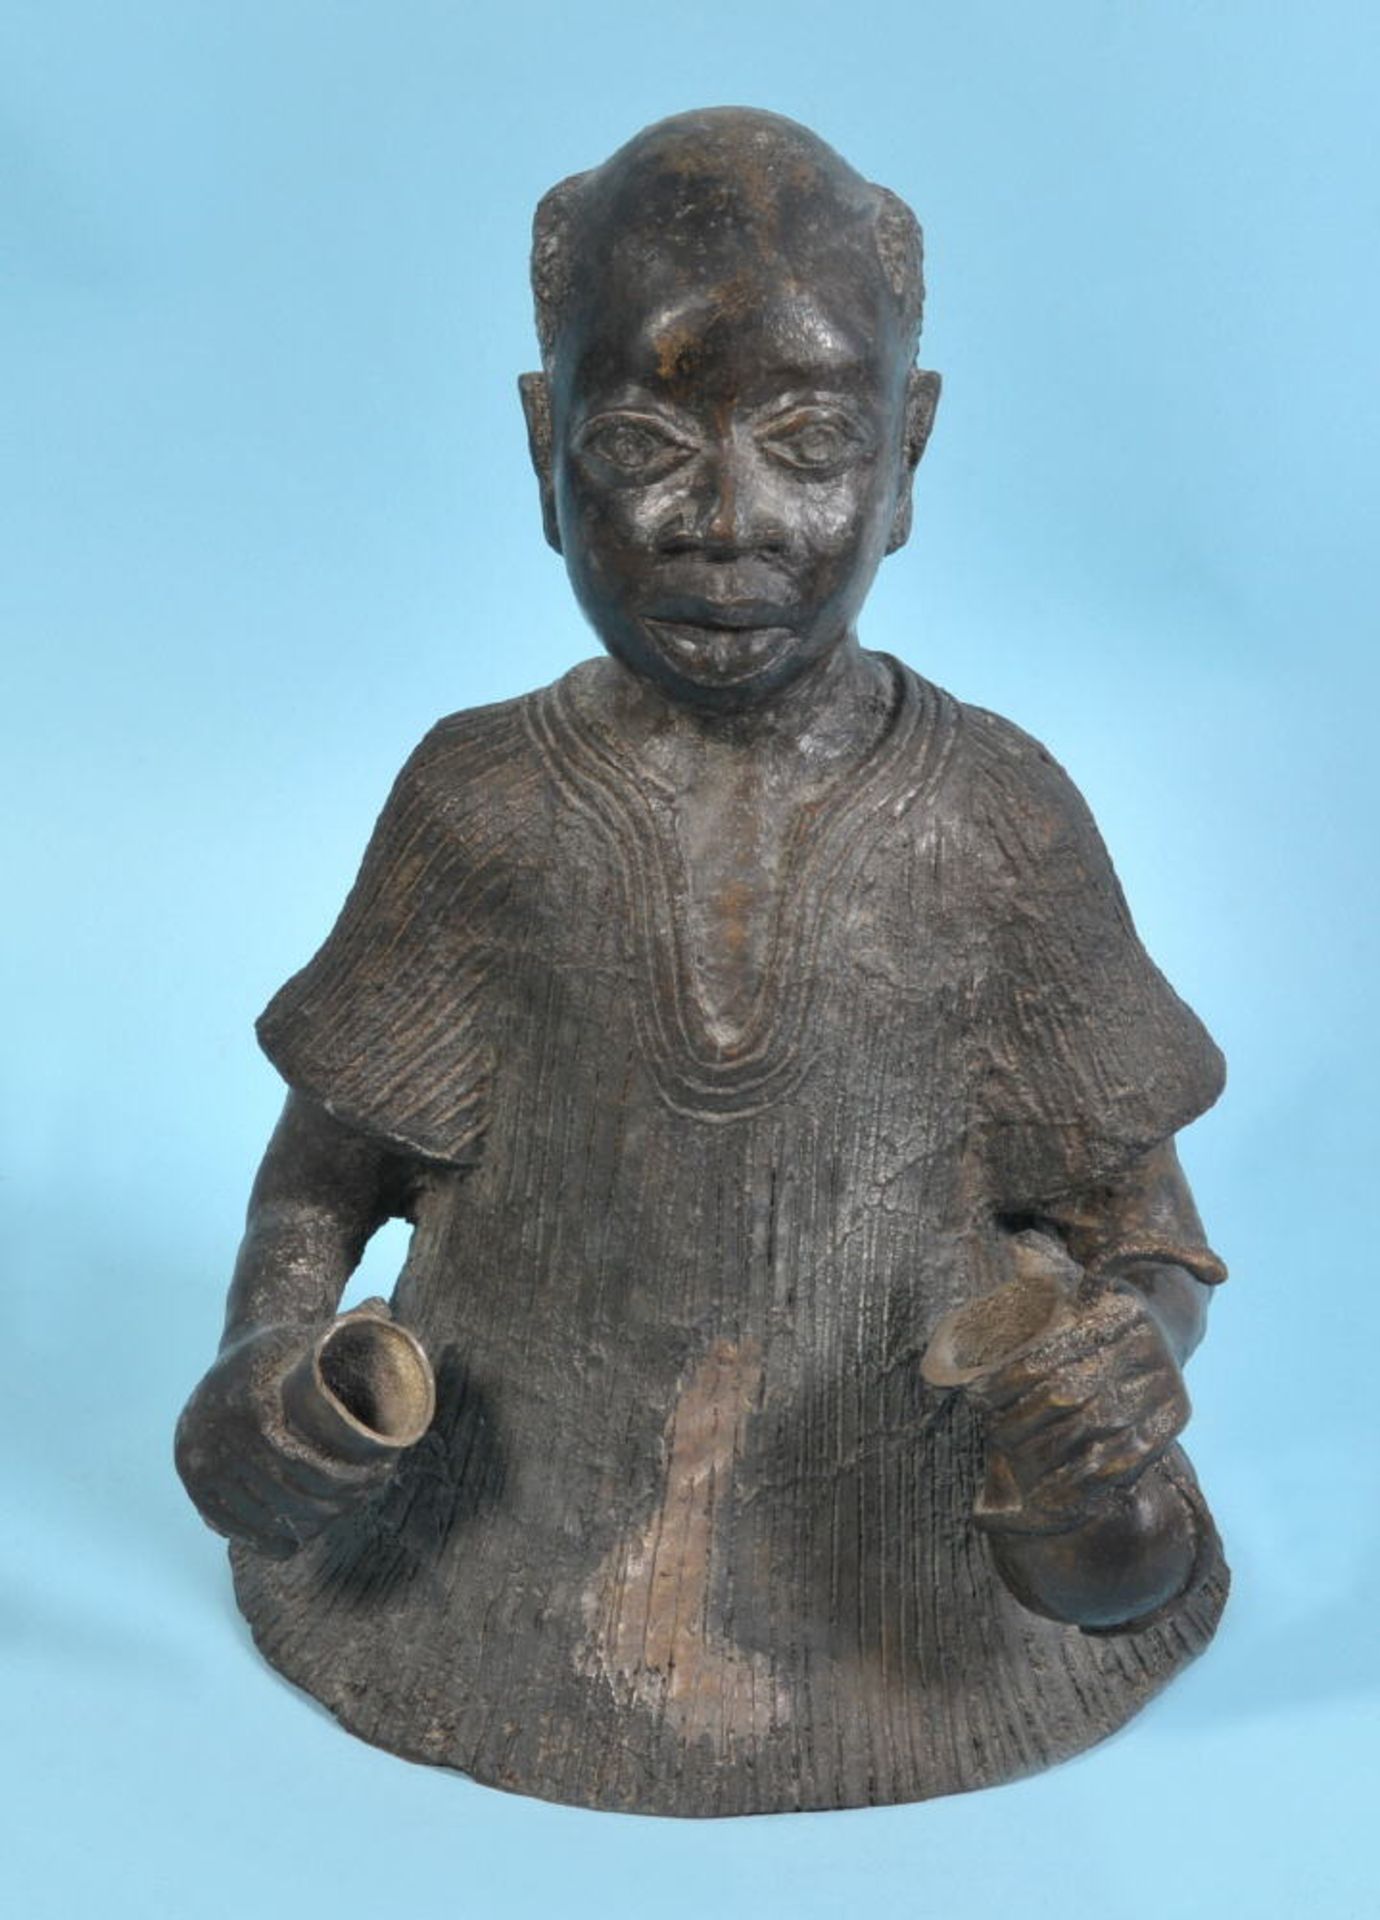 Afrikanische Skulptur - Mann mit zwei GefäßenBronze, dunkel patiniert, H= 38 cm, Nigeria